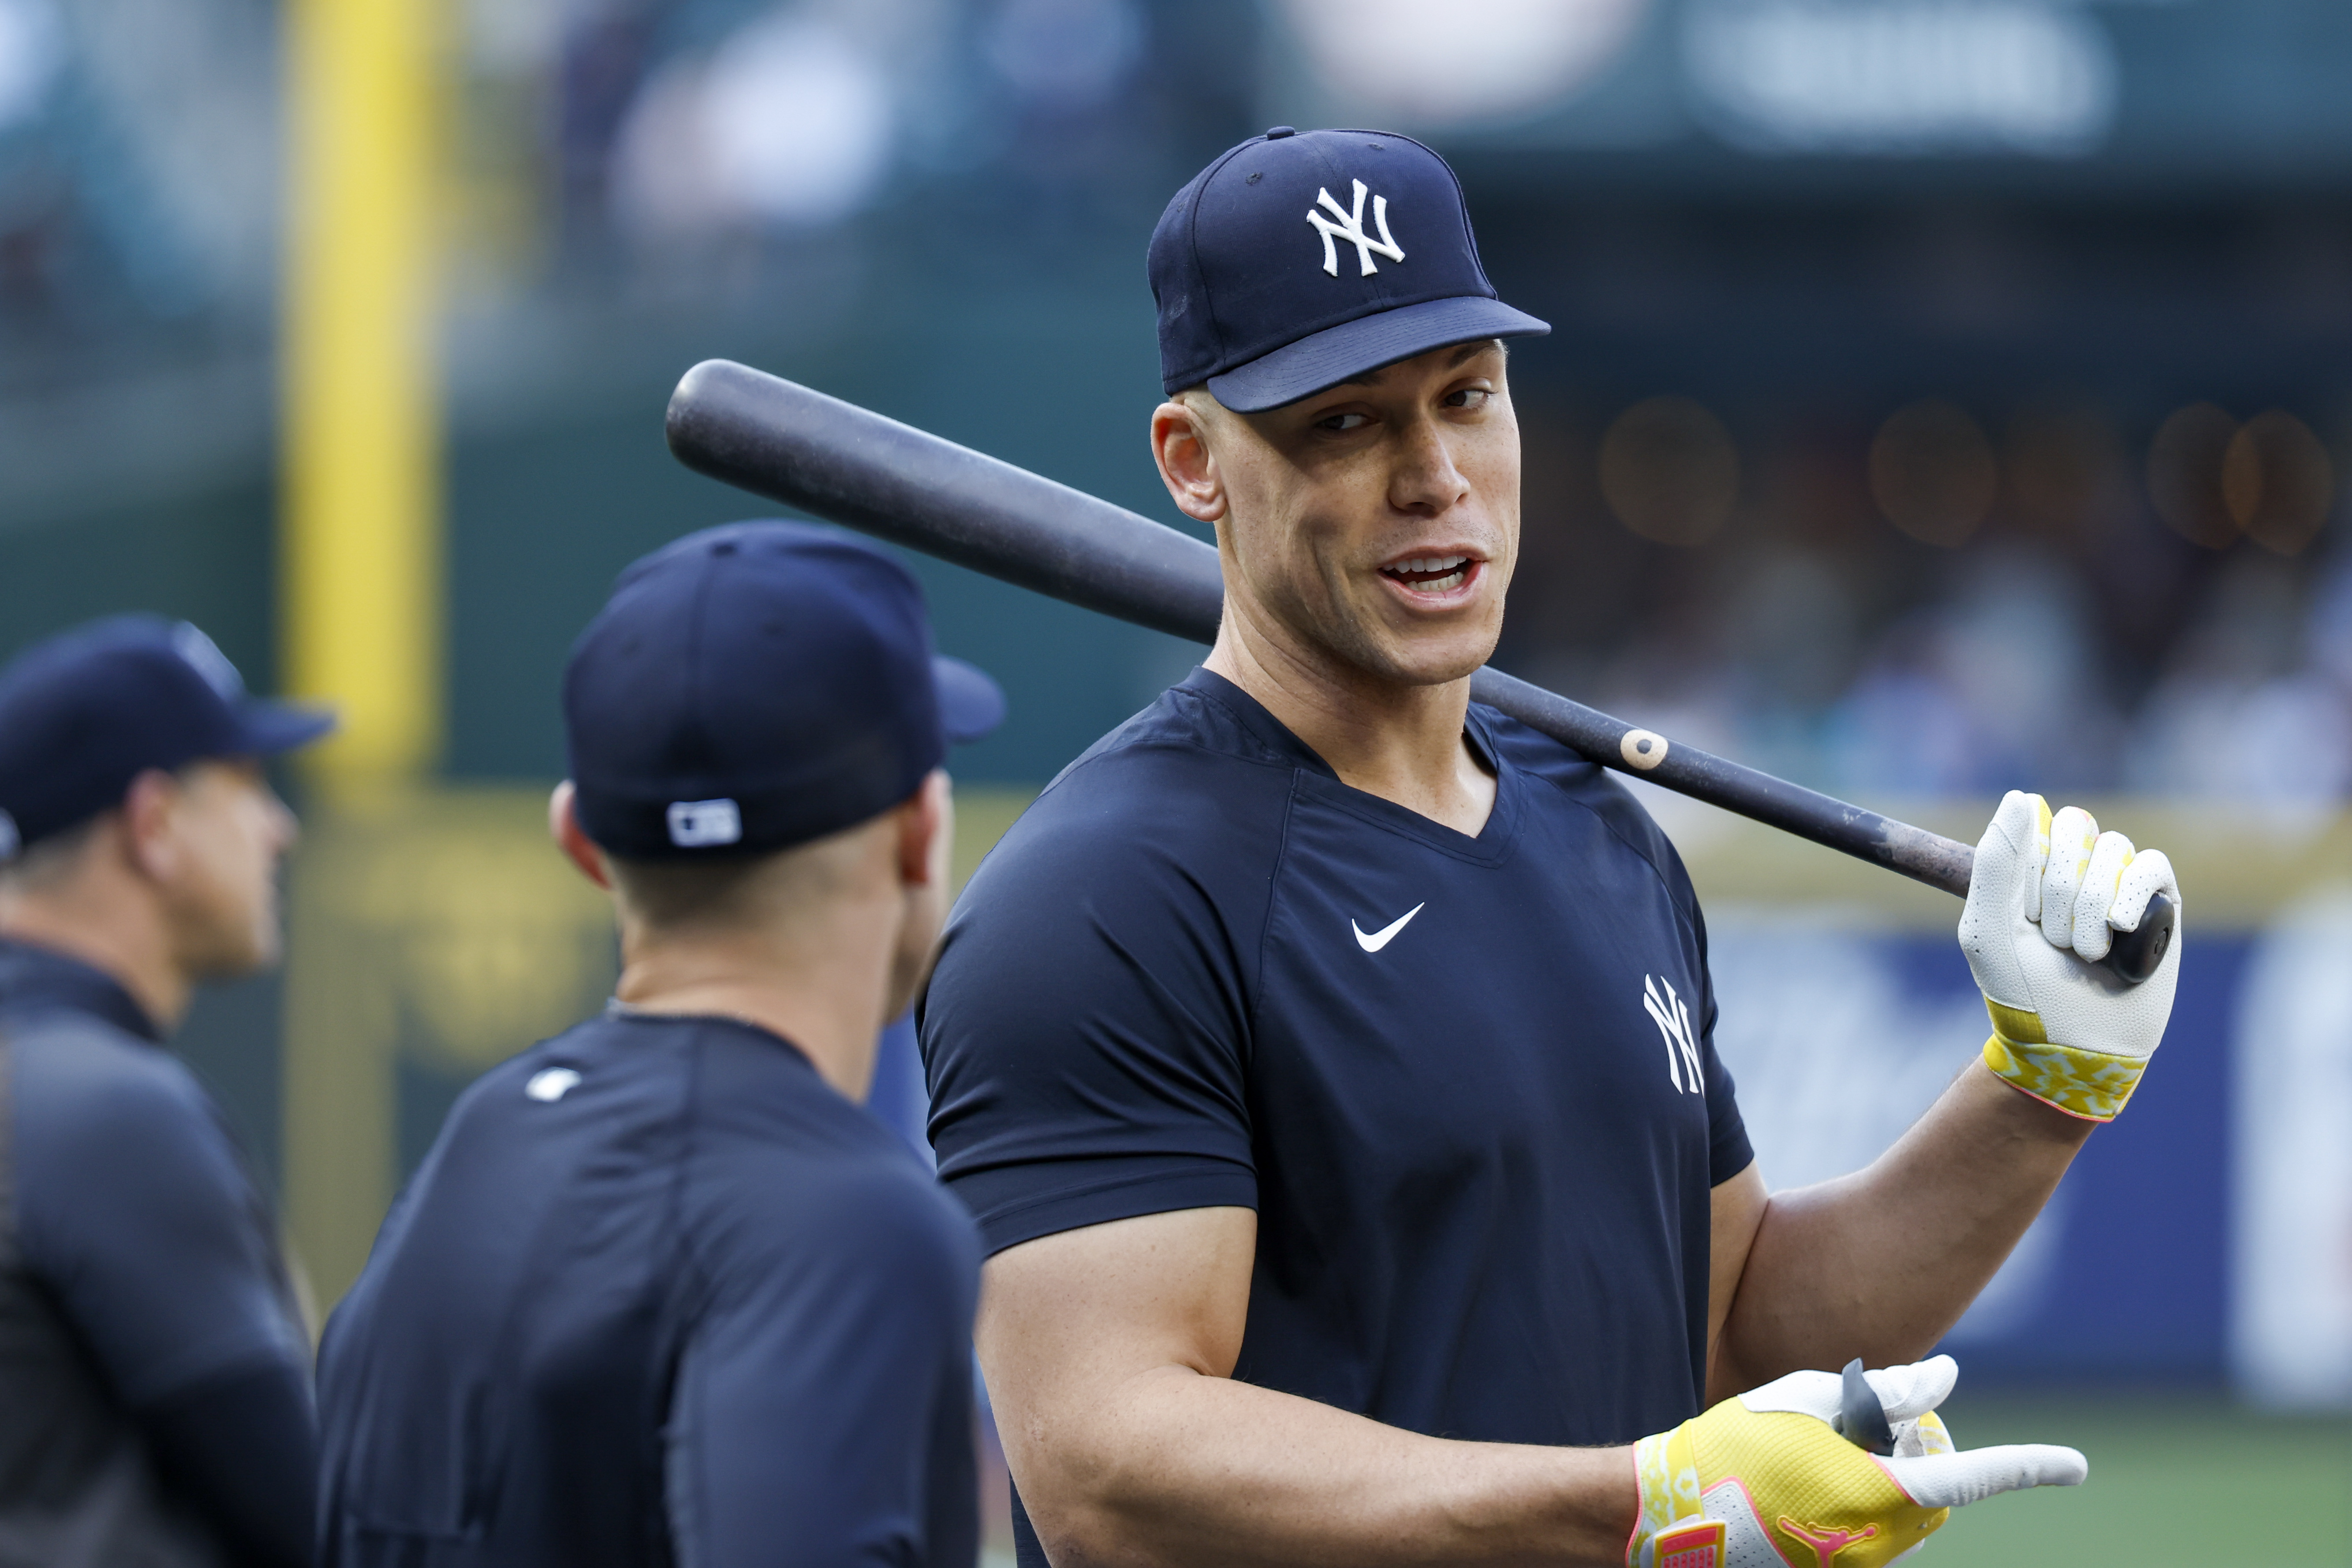 Aaron Judge belts 18th HR as Yankees blast Mariners